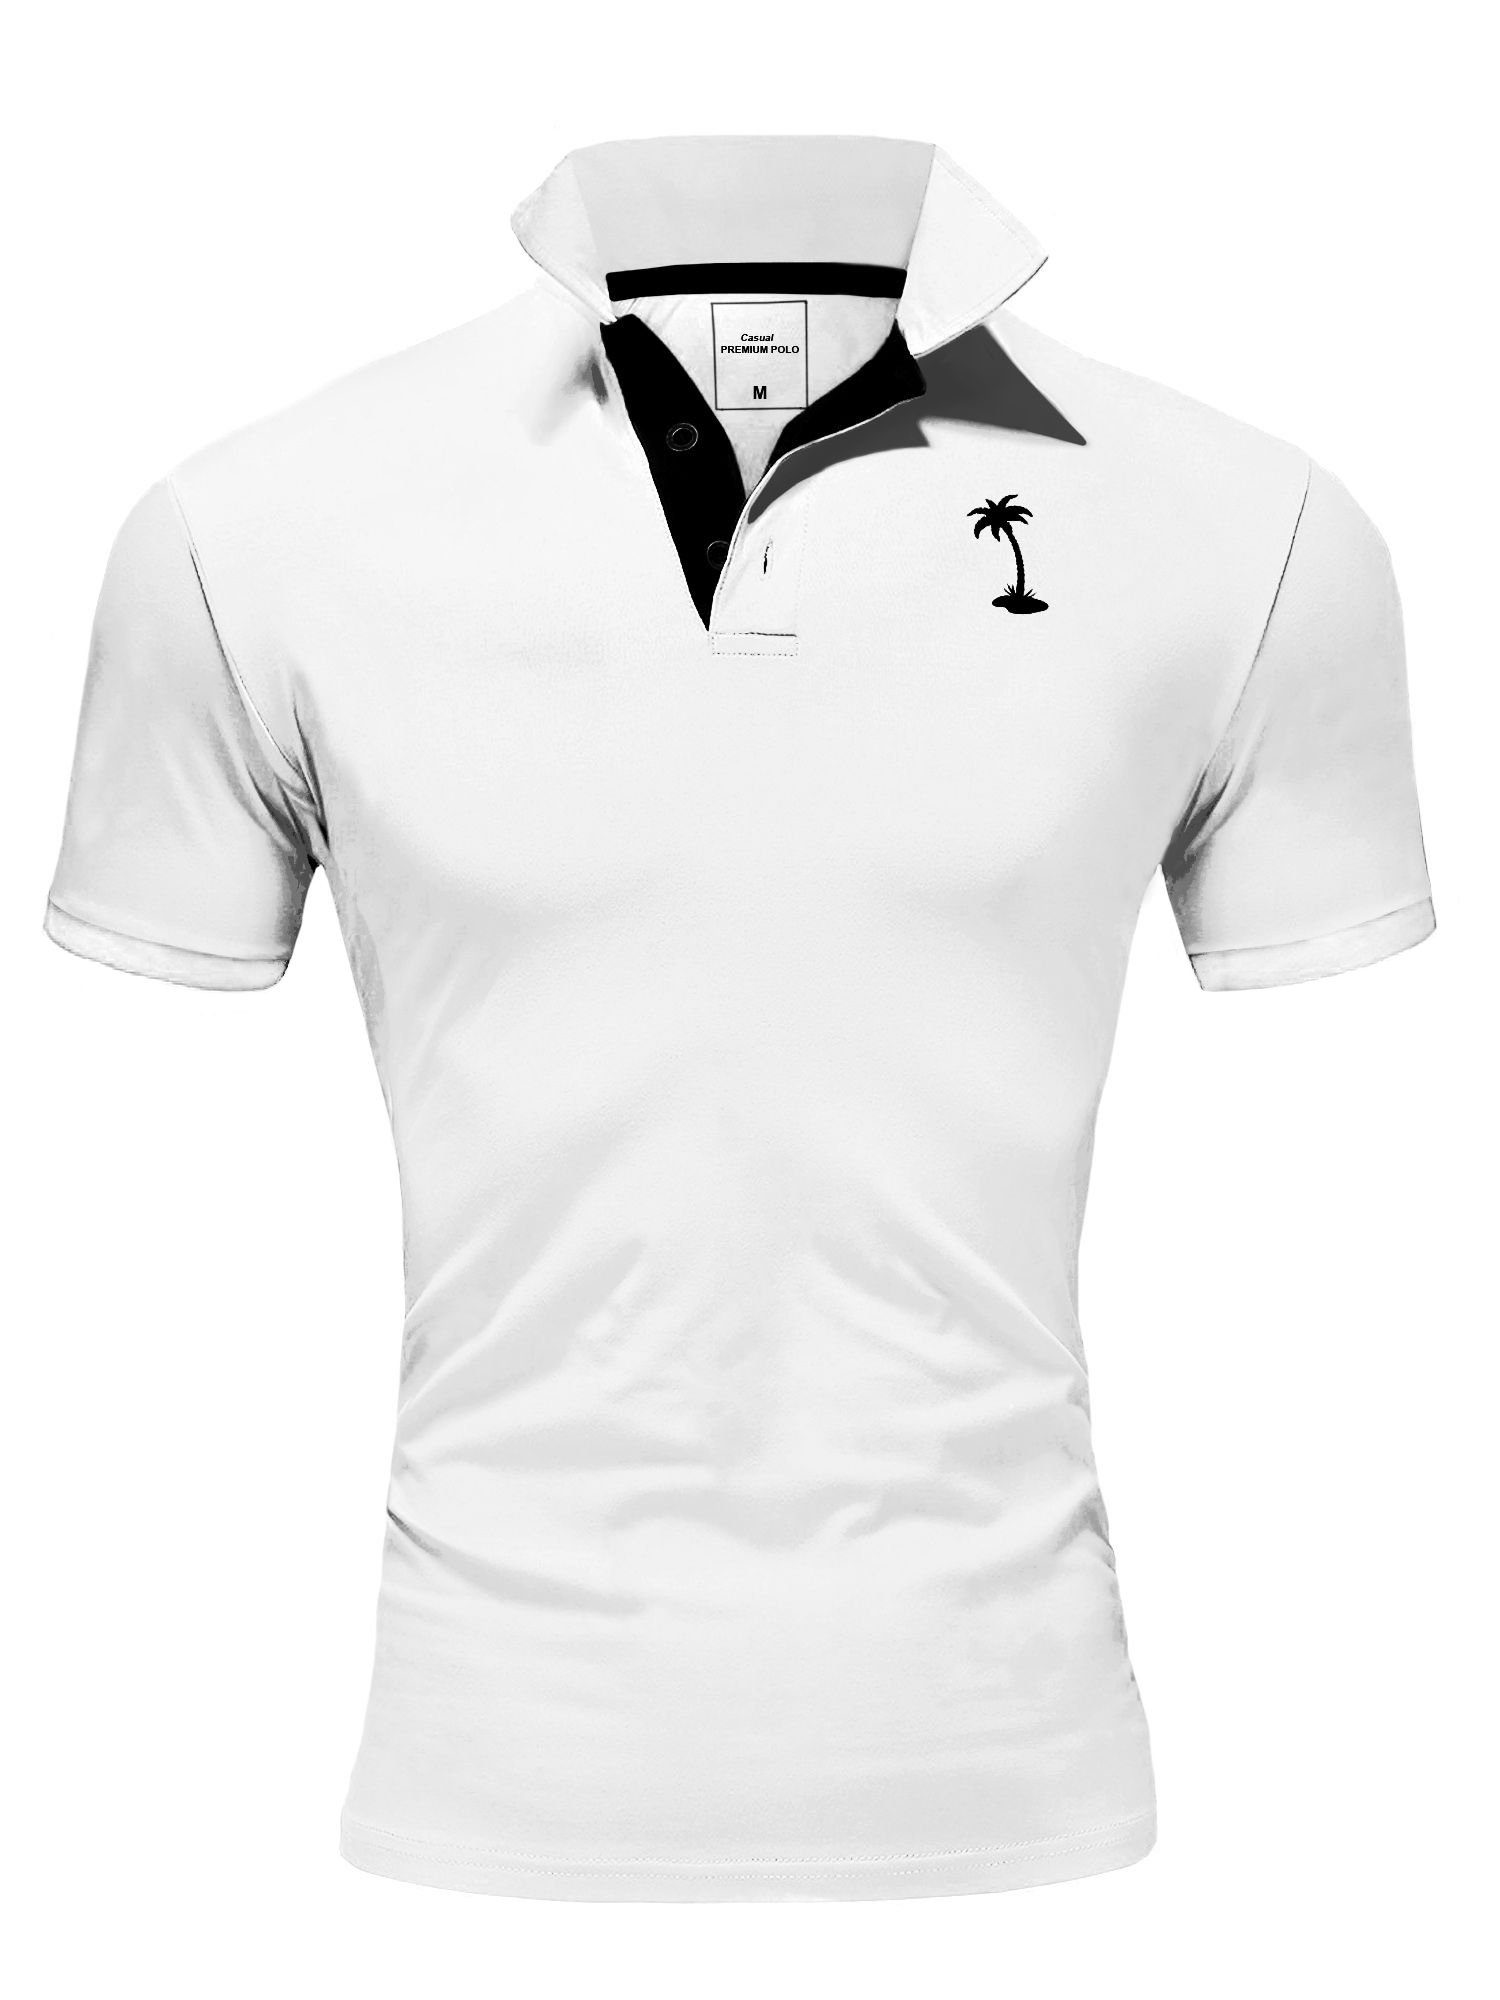 behype Poloshirt PALMSON mit kontrastfarbigen Details weiß-schwarz